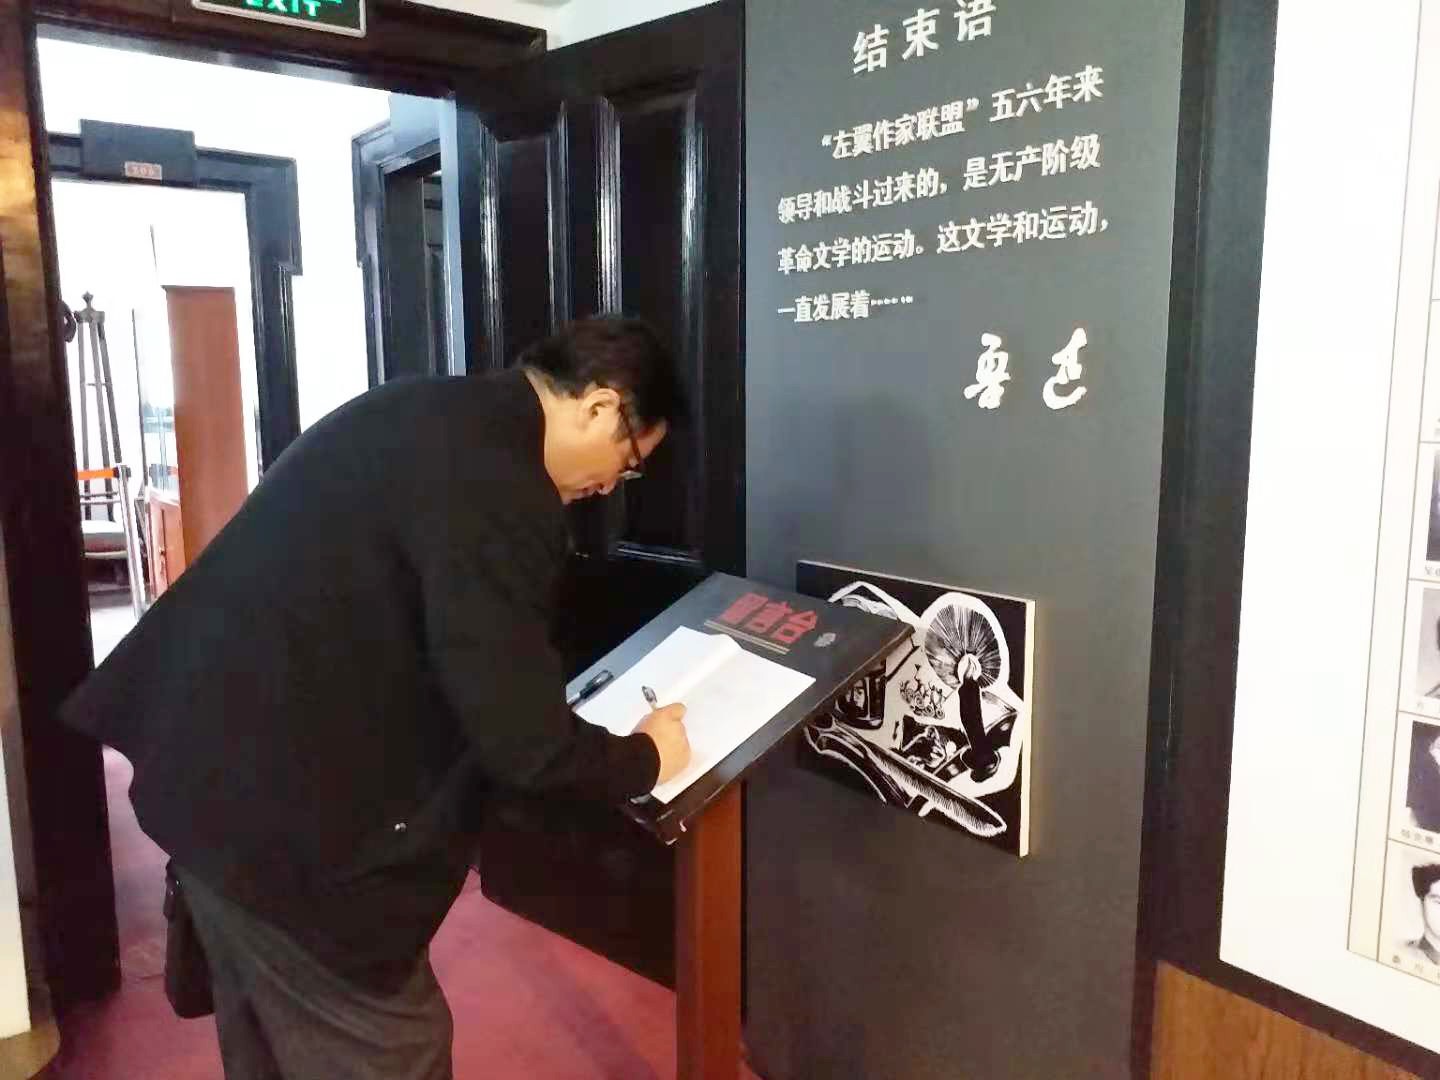 9.作者在上海左联纪念馆留言.JPG